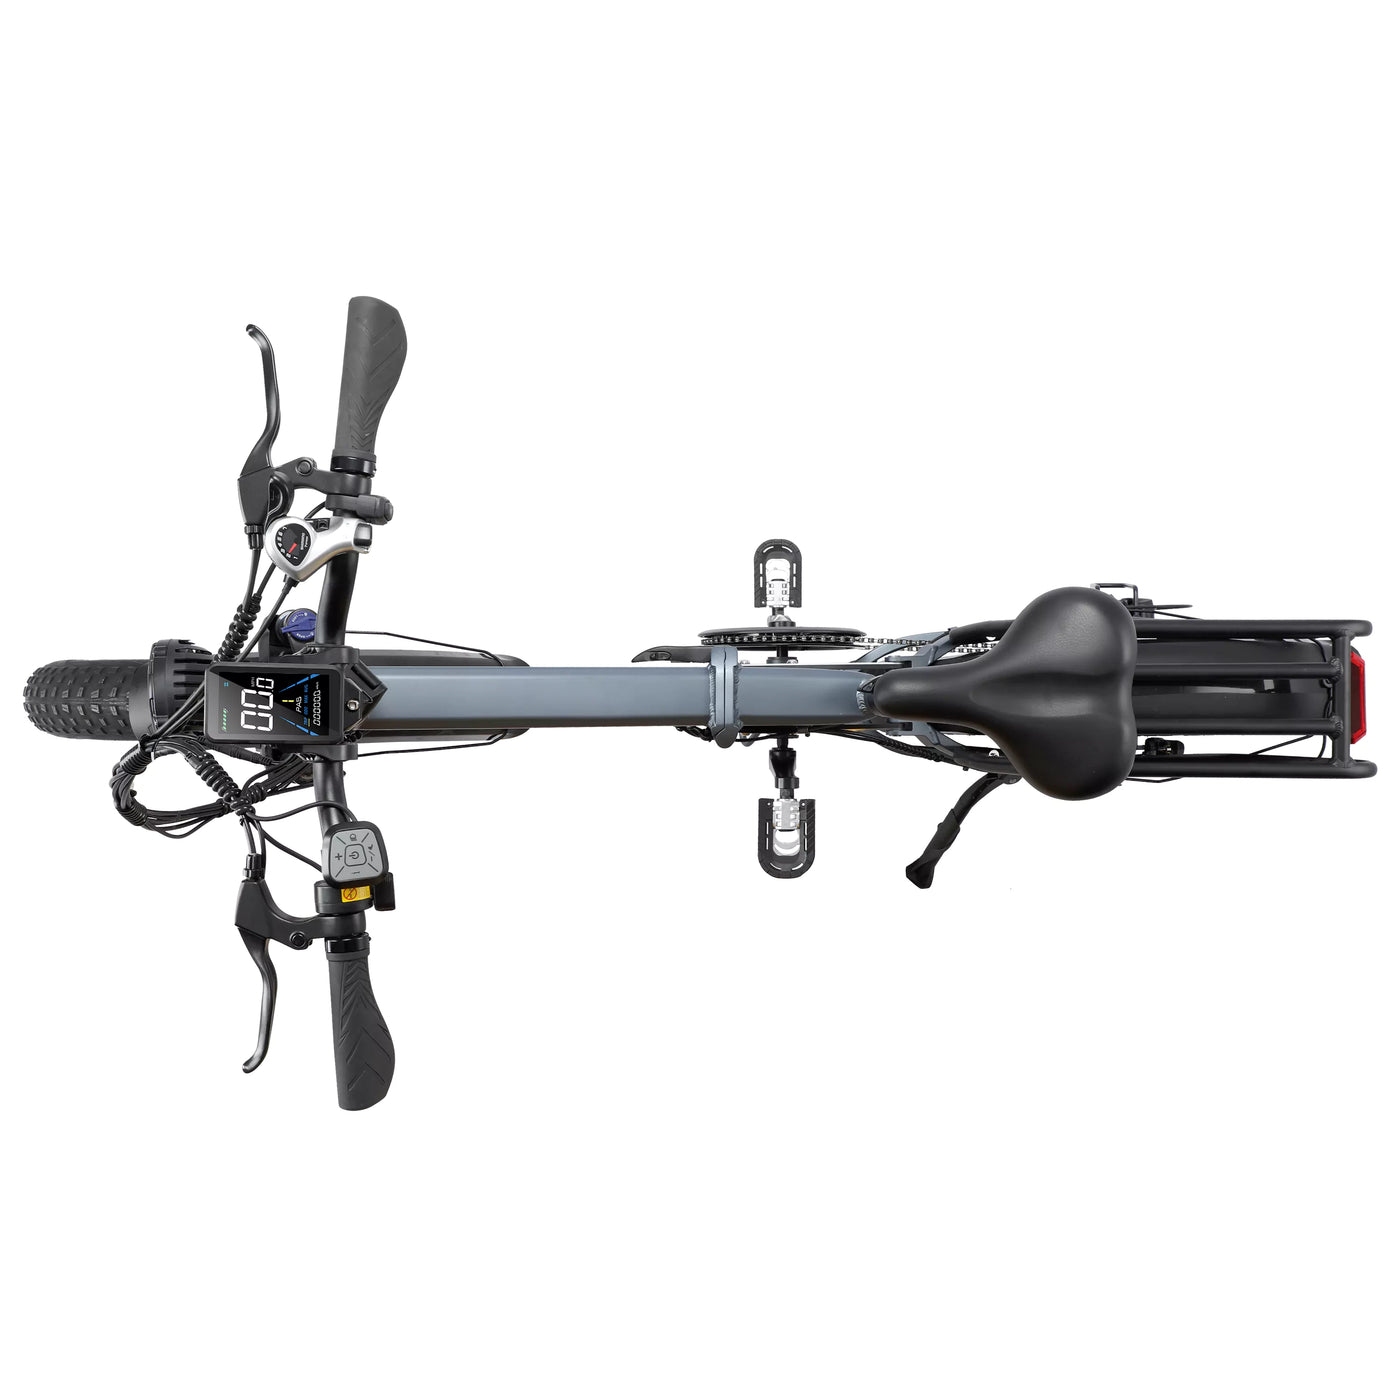 Tesgo seeker hum pro Full Suspension Folding E-Bike